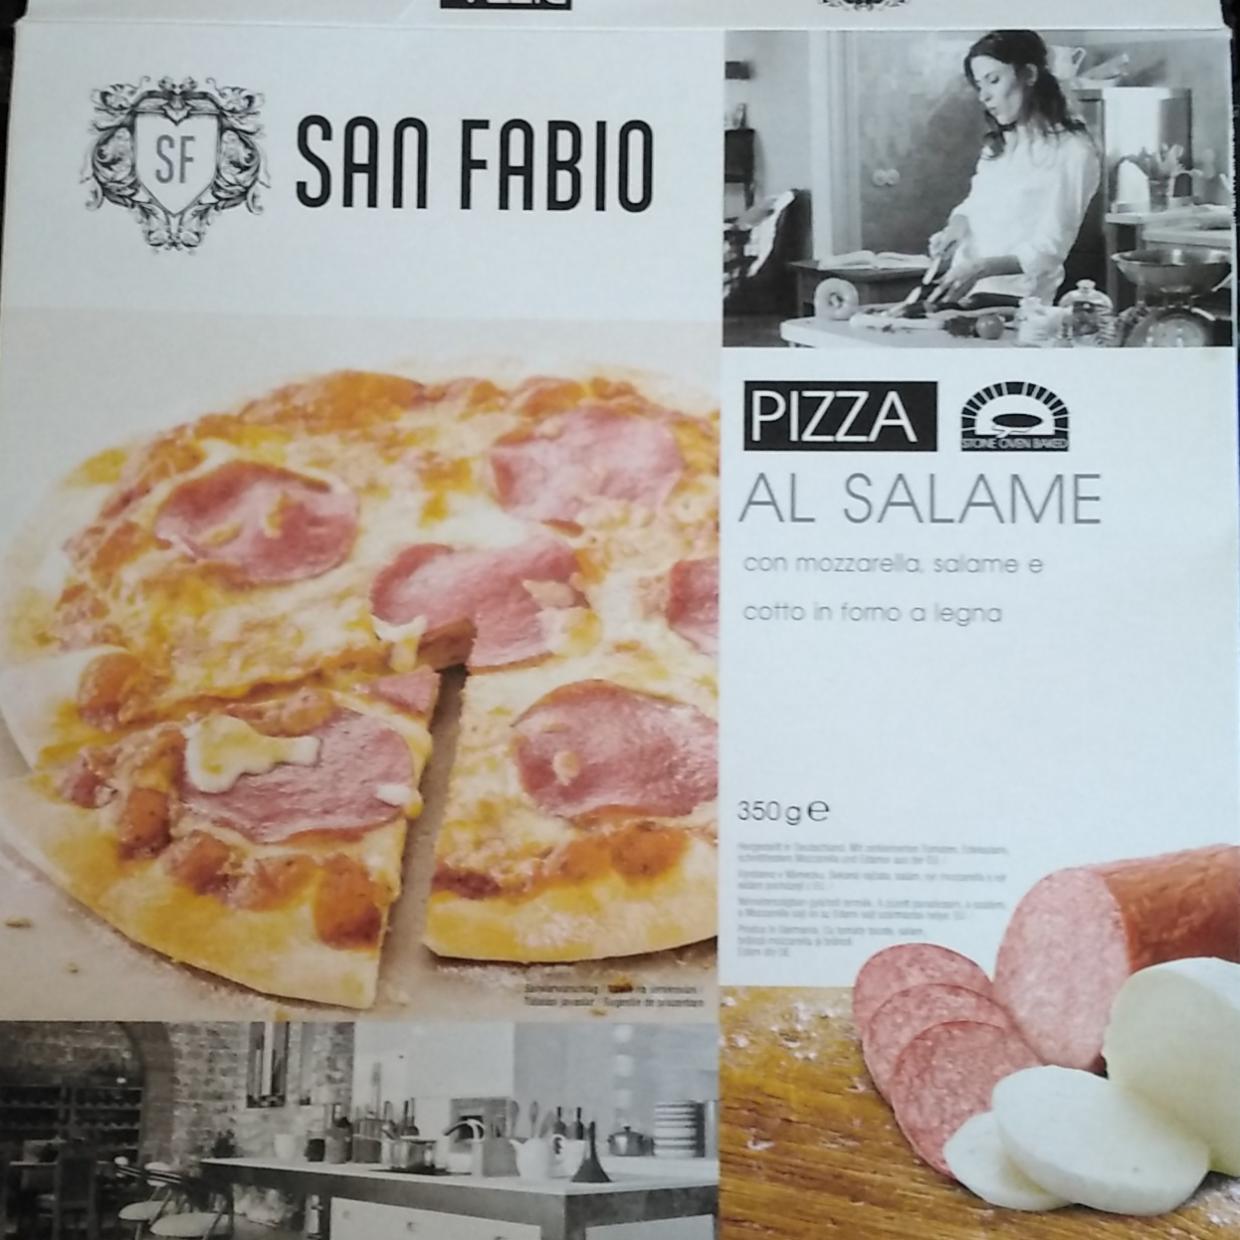 Képek - Pizza al salame San fabio